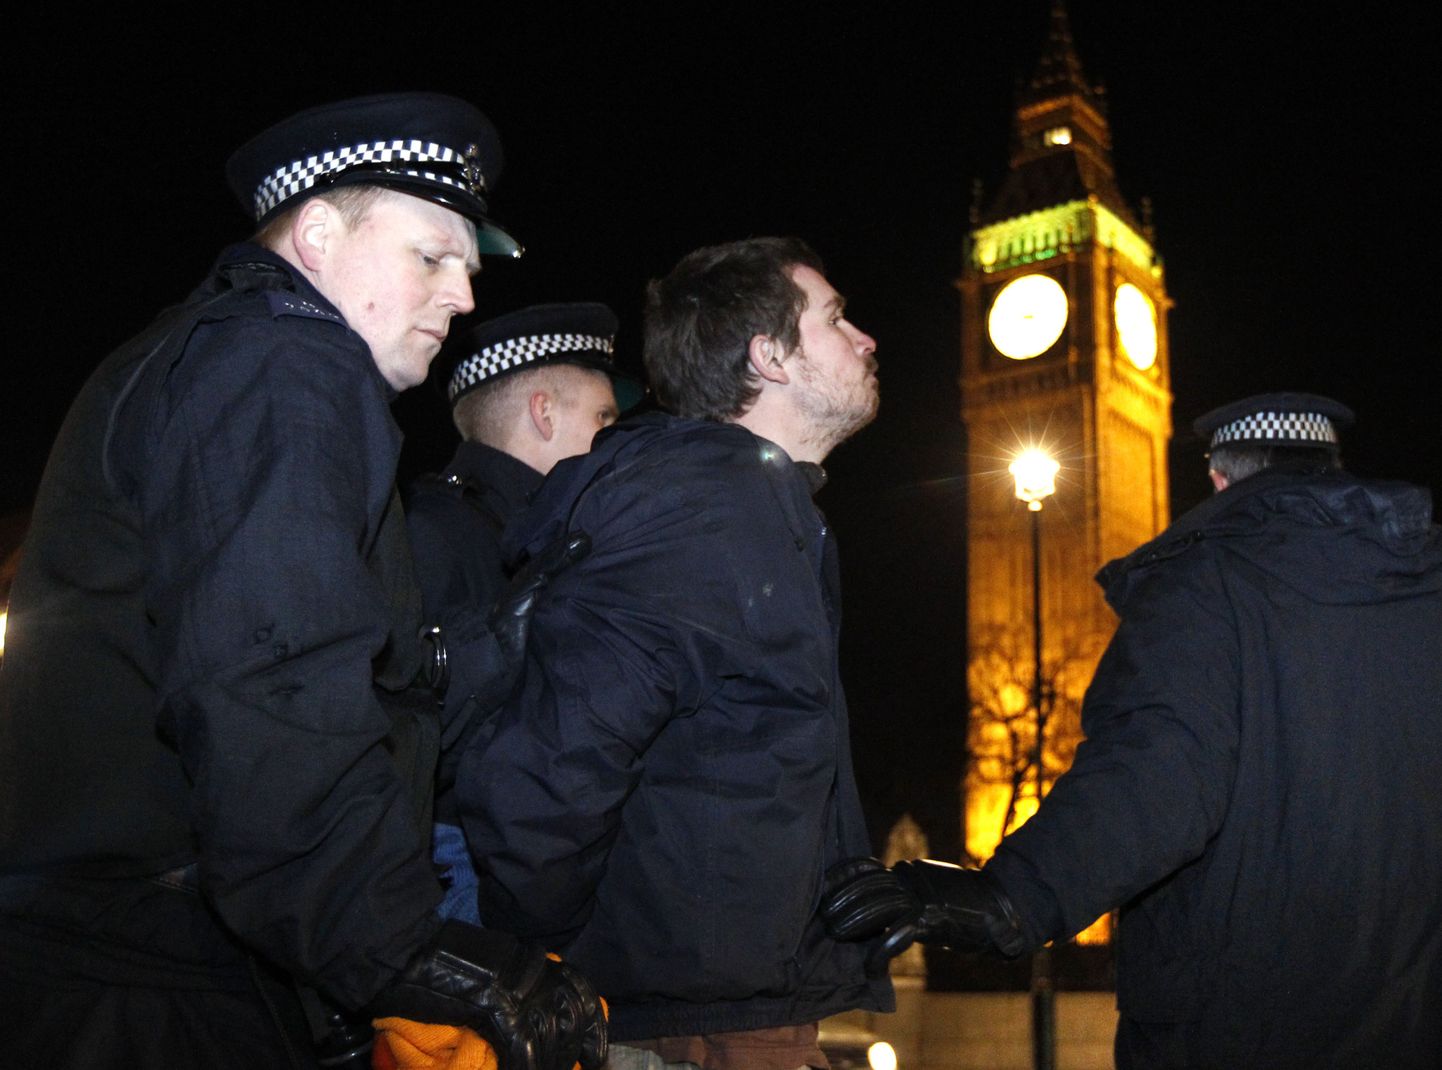 Londoni politsei raiskas hiigelsumma kellaaja küsimisele